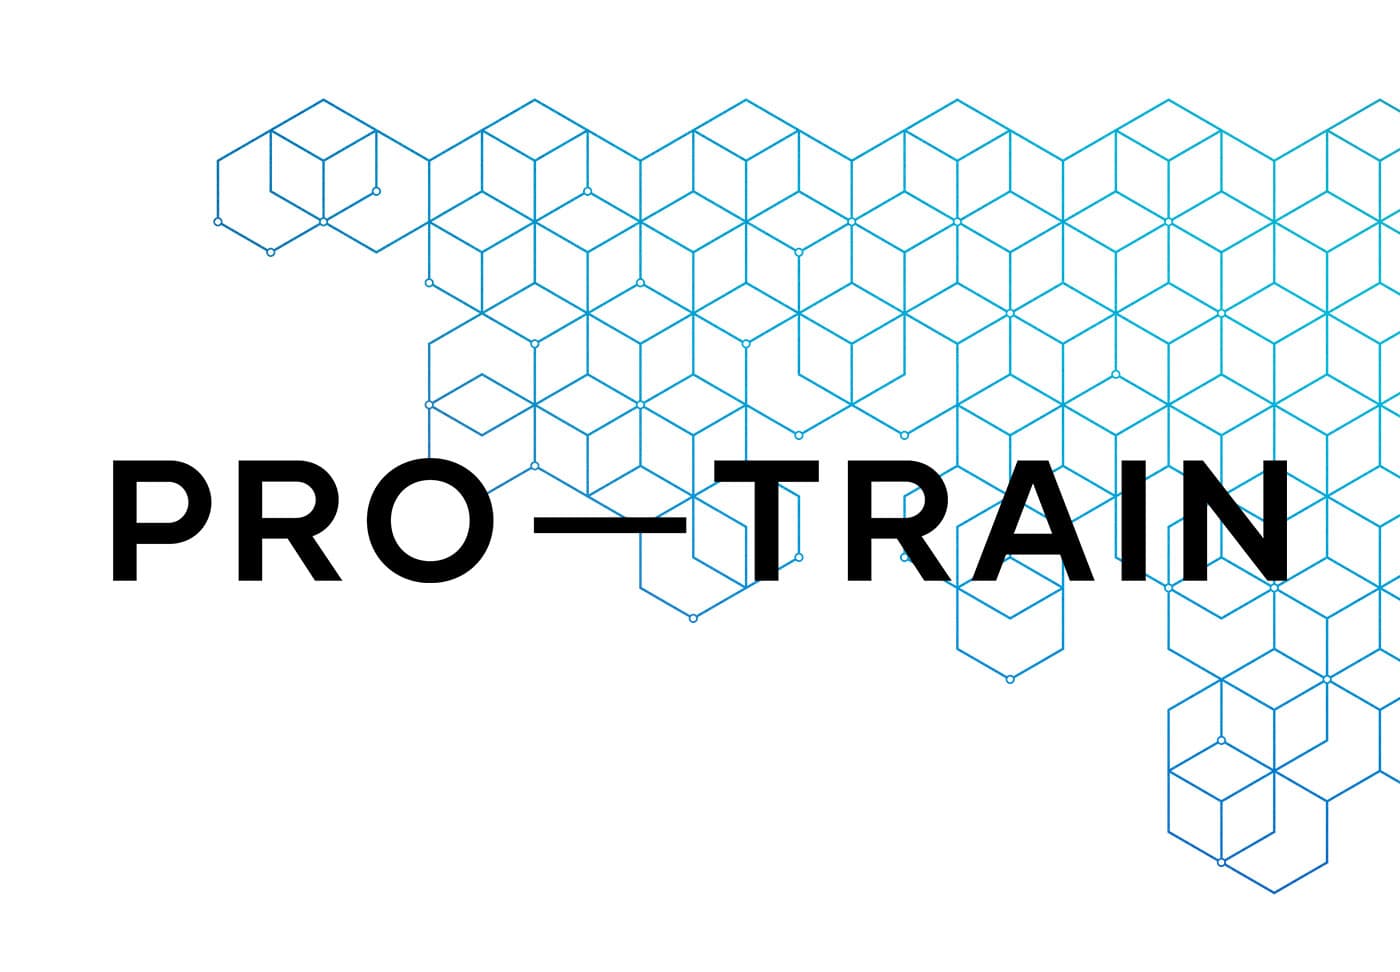 Pro-Train logo and brand pattern